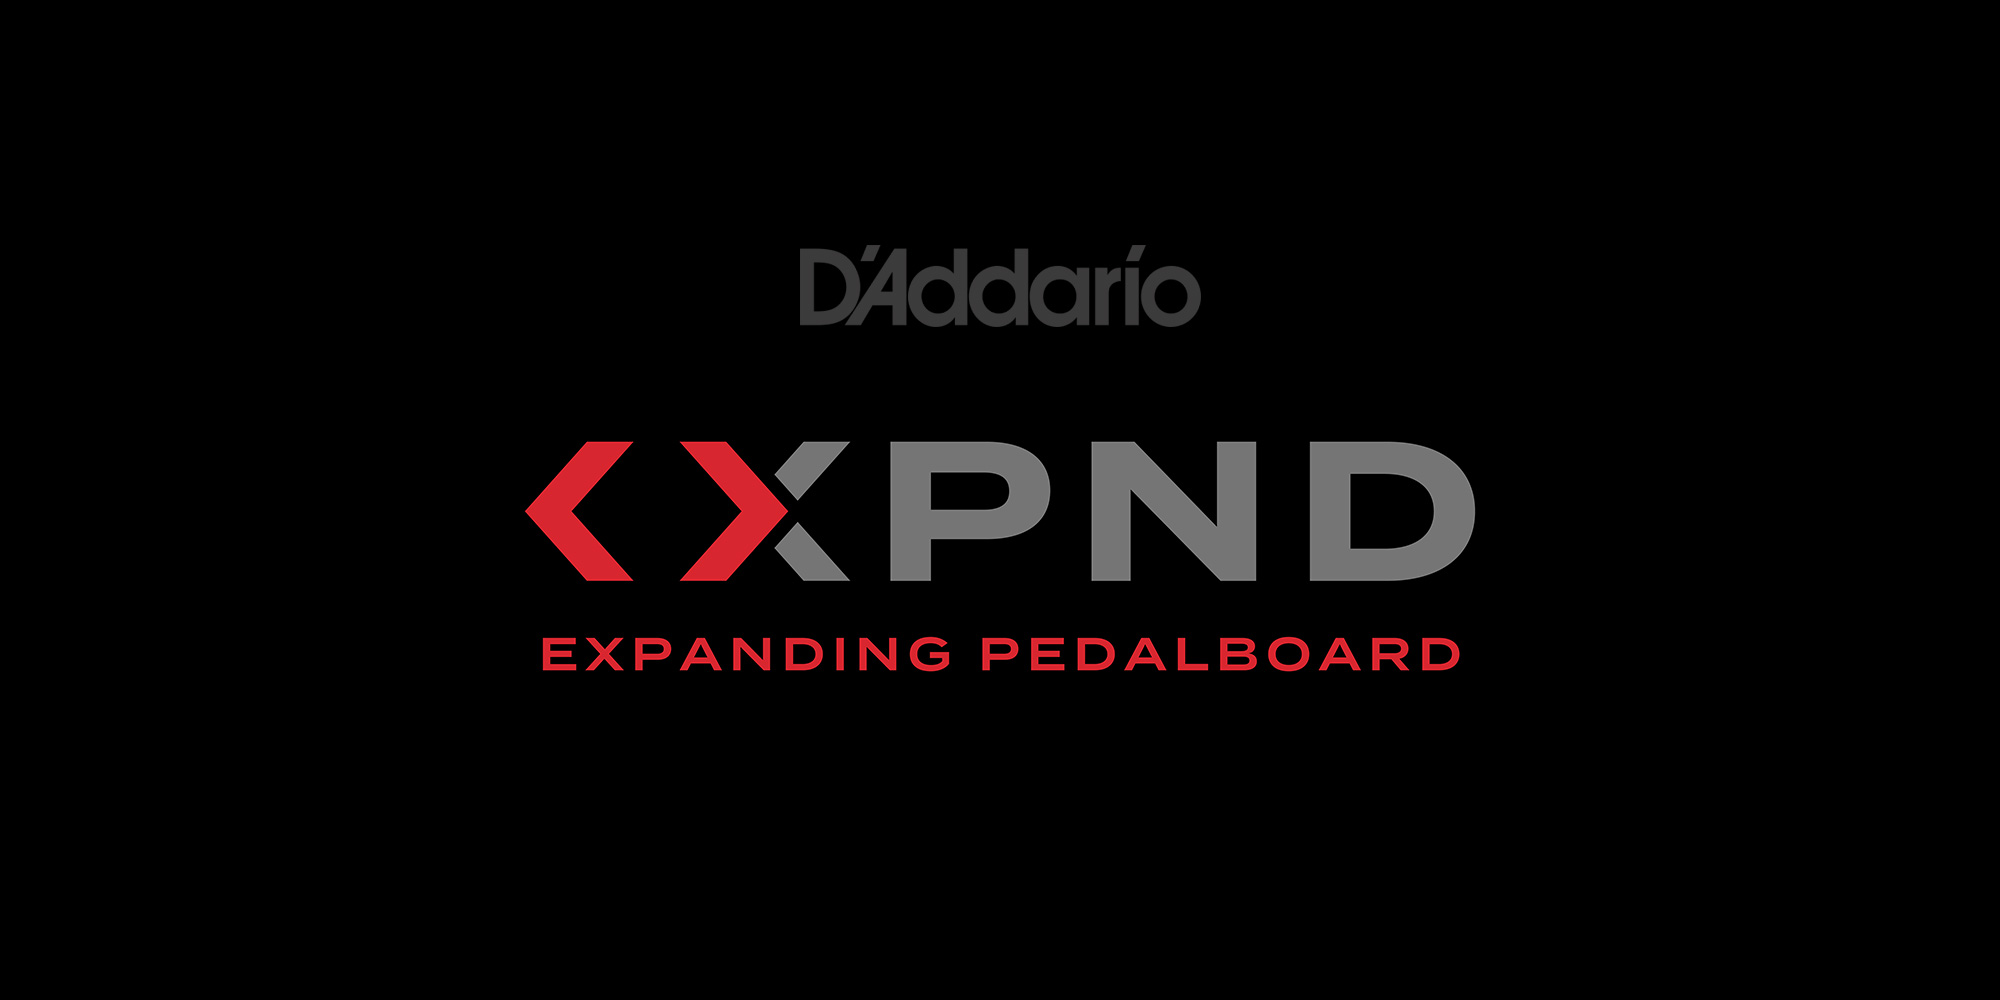 【D’Addario】 全く新しいコンセプトのペダルボード『XPND 』シリーズ発売！